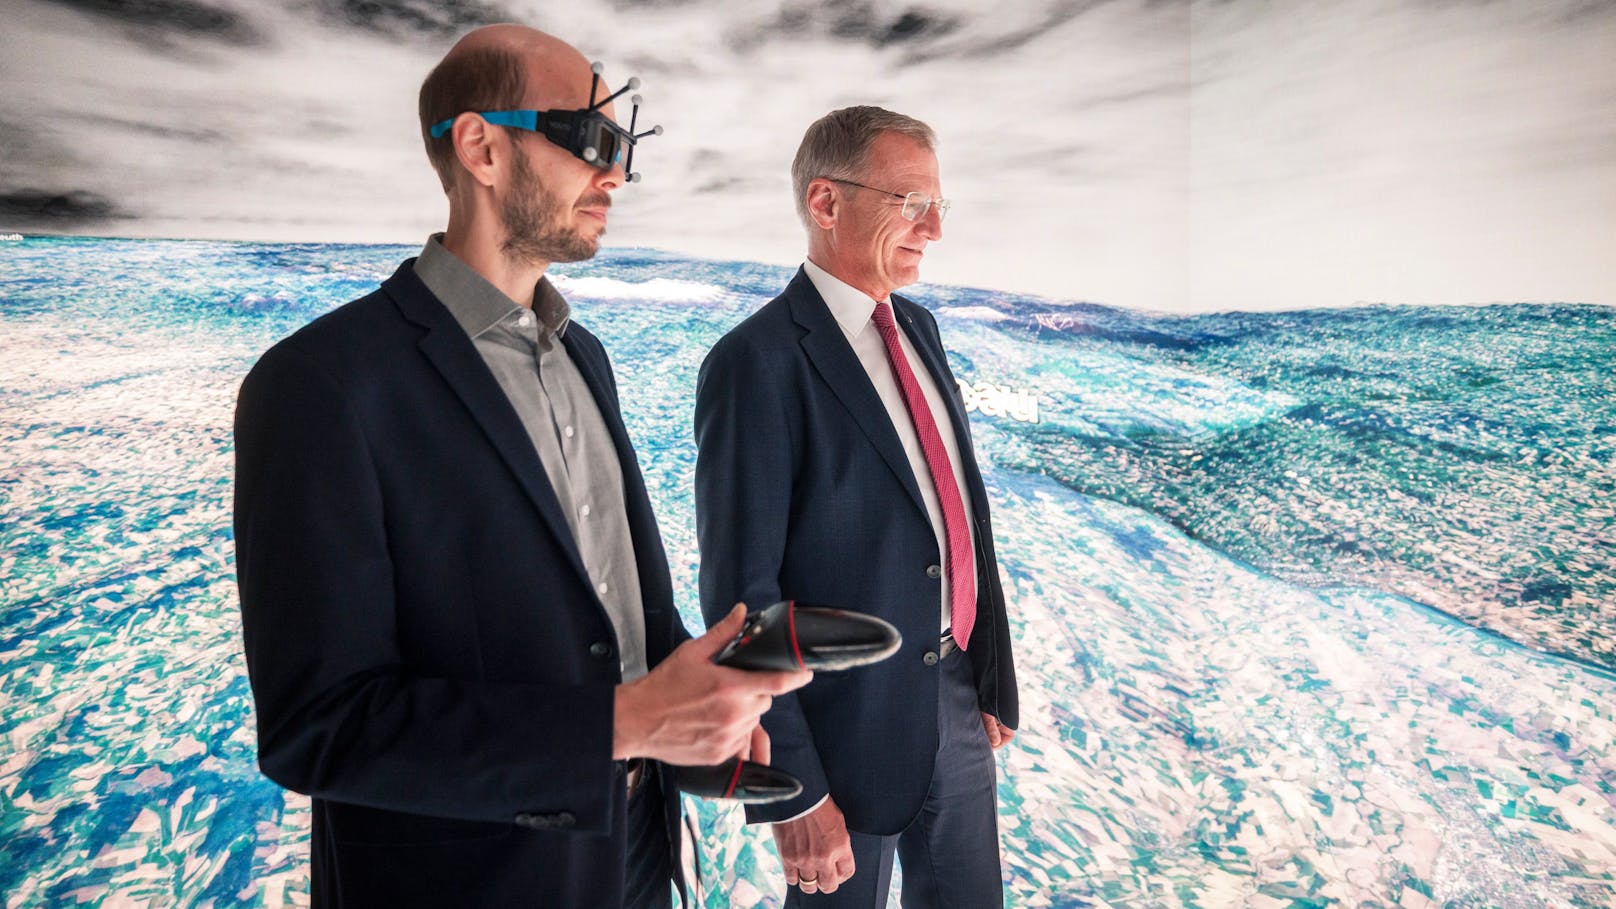 Landeshauptmann Thomas Stelzer in der "LED-CAVE", eine Installation für die Darstellung von Inhalten in Virtueller Realität.